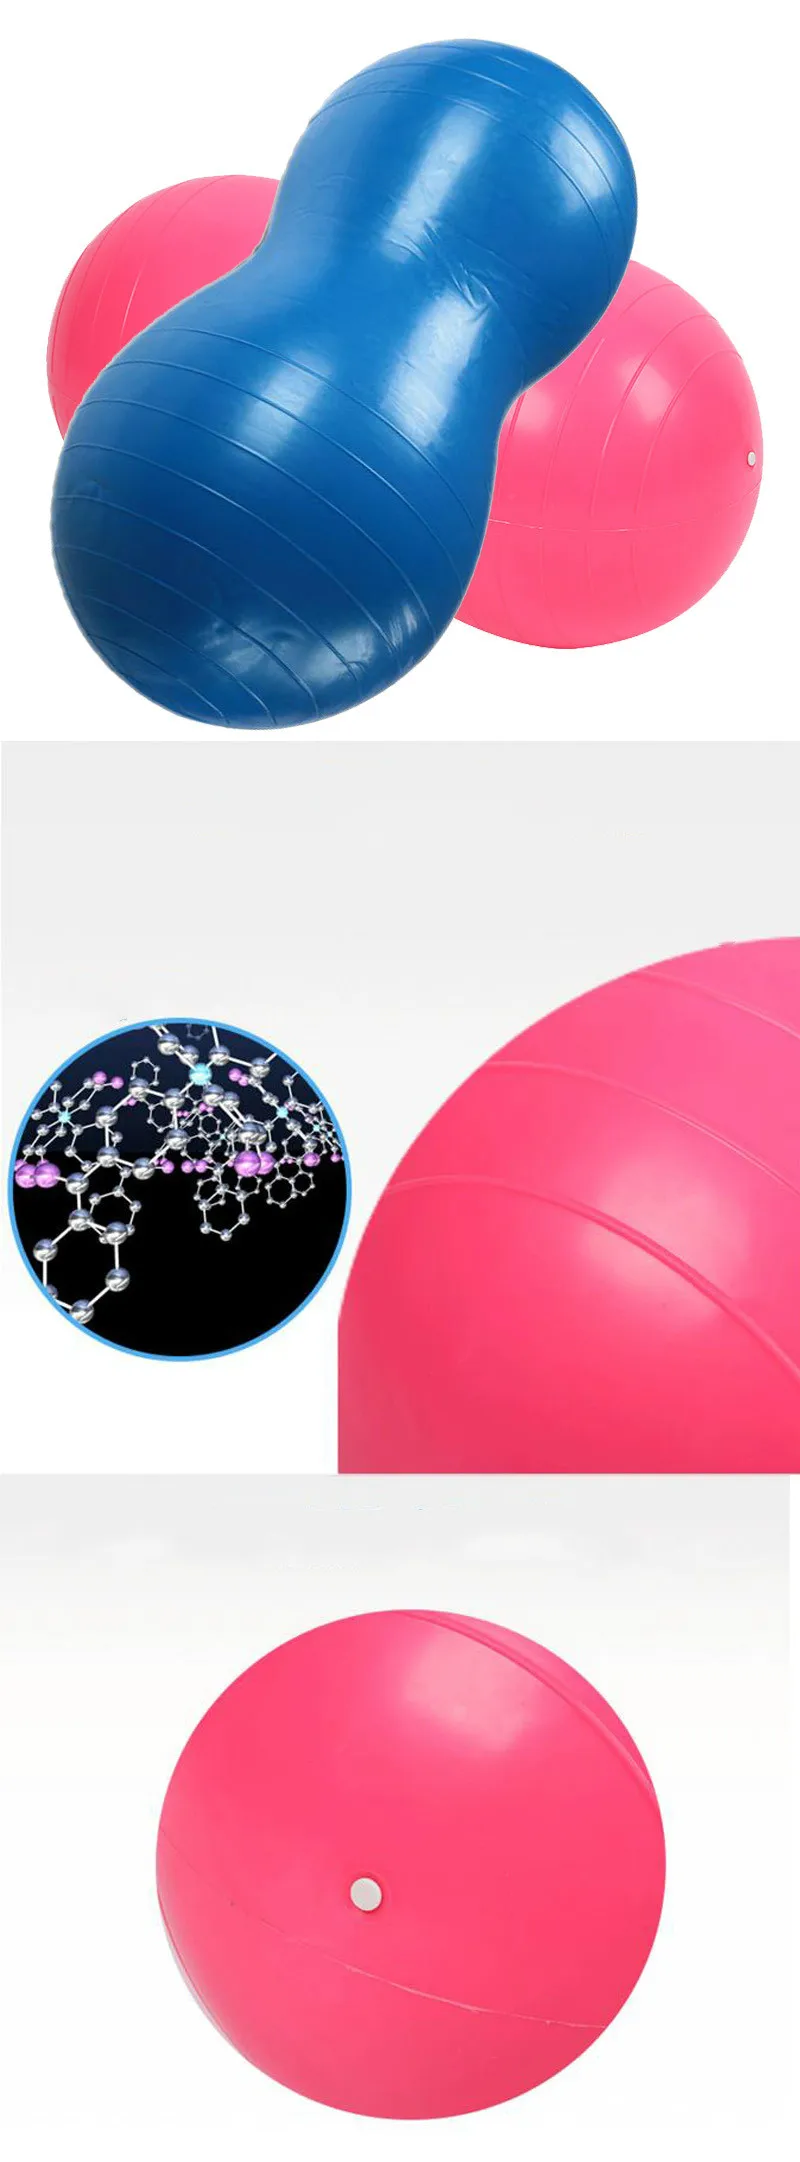 Арахис Массажный мяч для йоги утолщенный dexplosion-proof capsule ball massagerehabilitation обучение пожилых Фитнес мяч для йоги